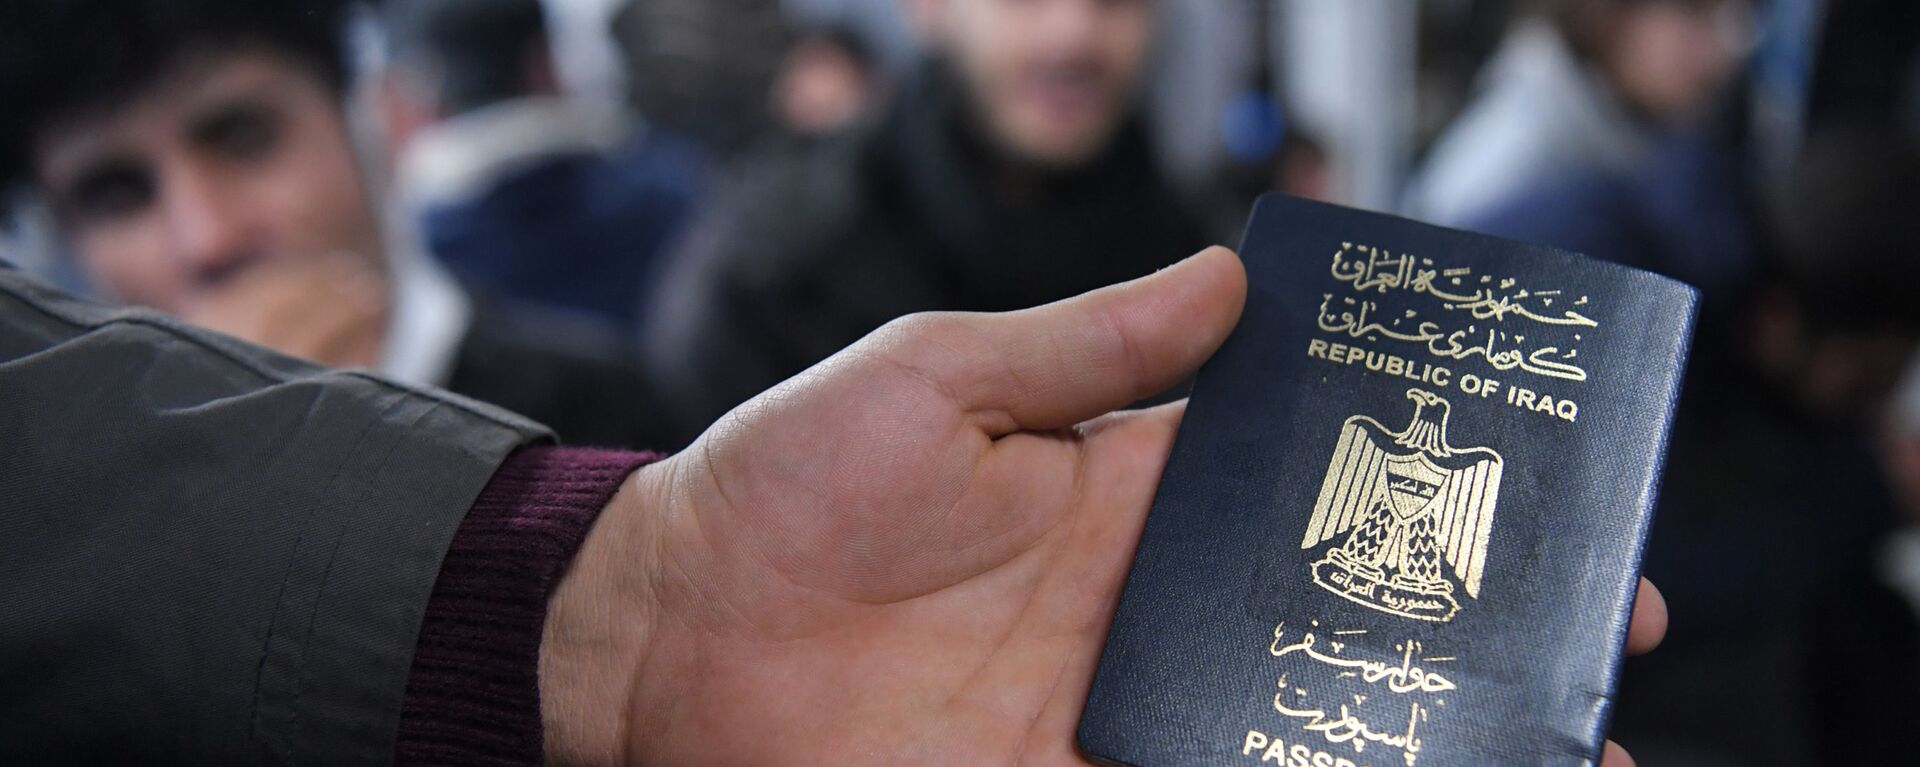 Иракский паспорт в руке одного из беженцев, ожидающих в международном аэропорту Минска вывозных рейсов авиакомпании Iraqi Airways - Sputnik Беларусь, 1920, 15.12.2021